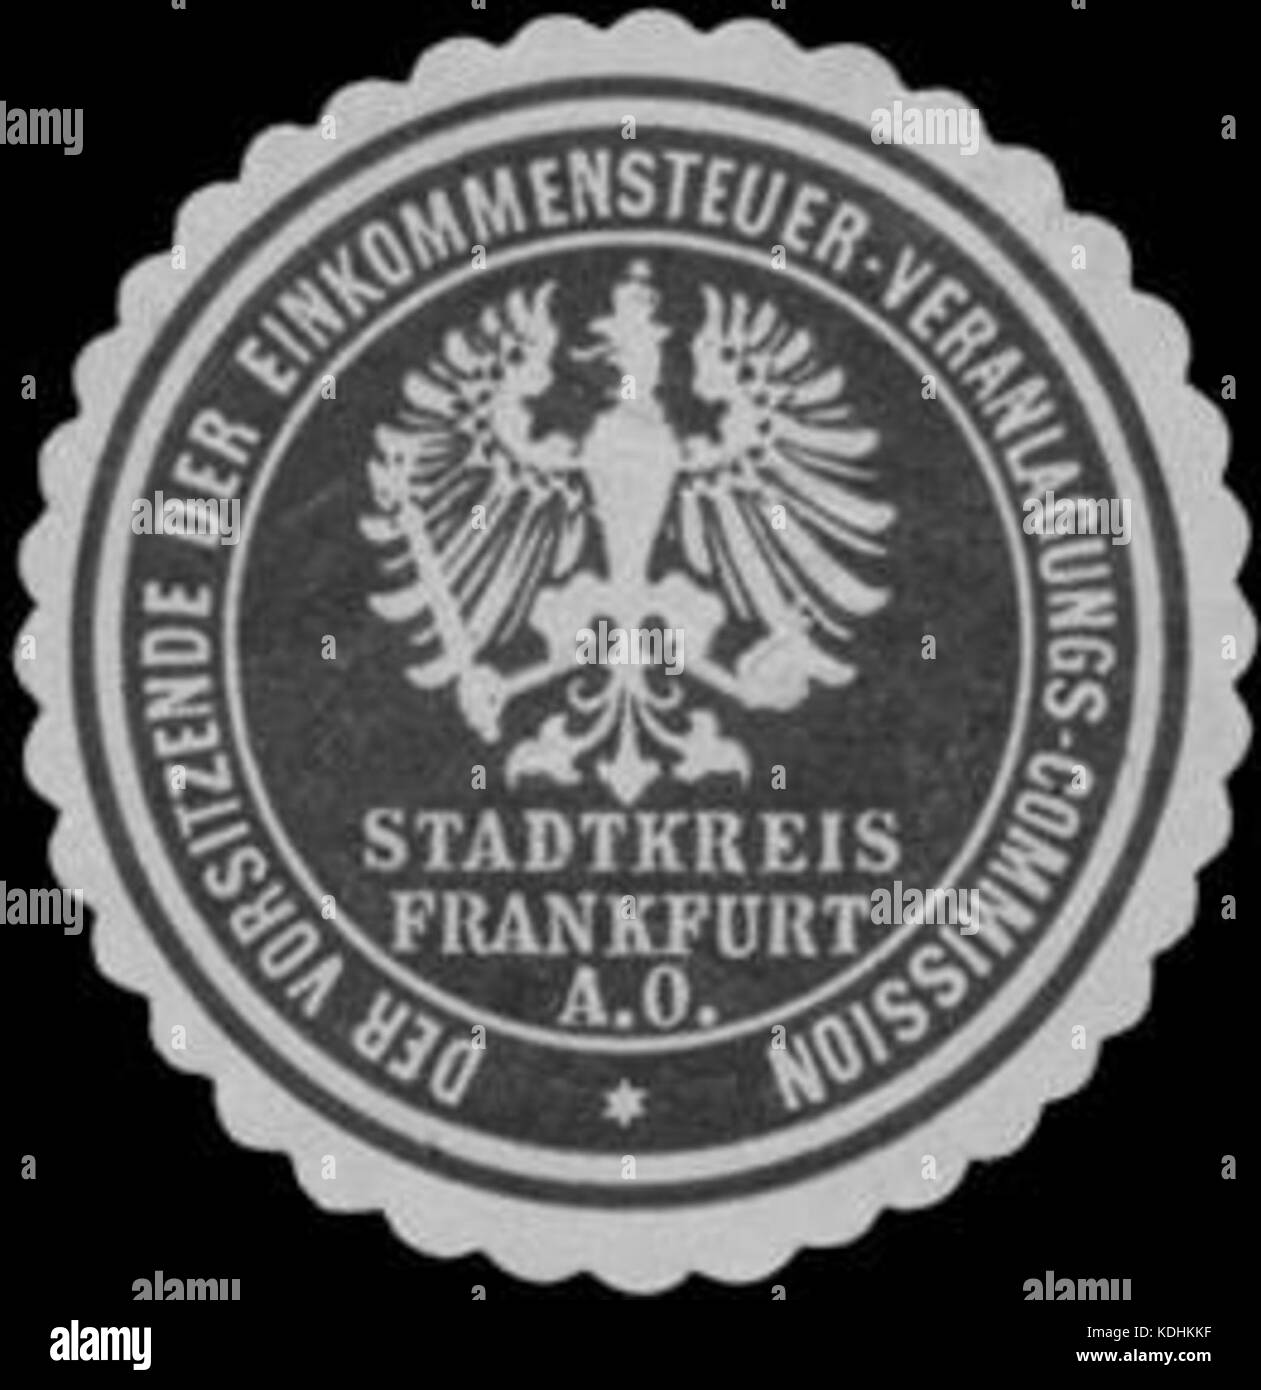 Siegelmarke Der Vorsitzende der Einkommensteuer Veranlagungs Commissione Stadtkreis Francoforte sull'Oder W0338743 Foto Stock